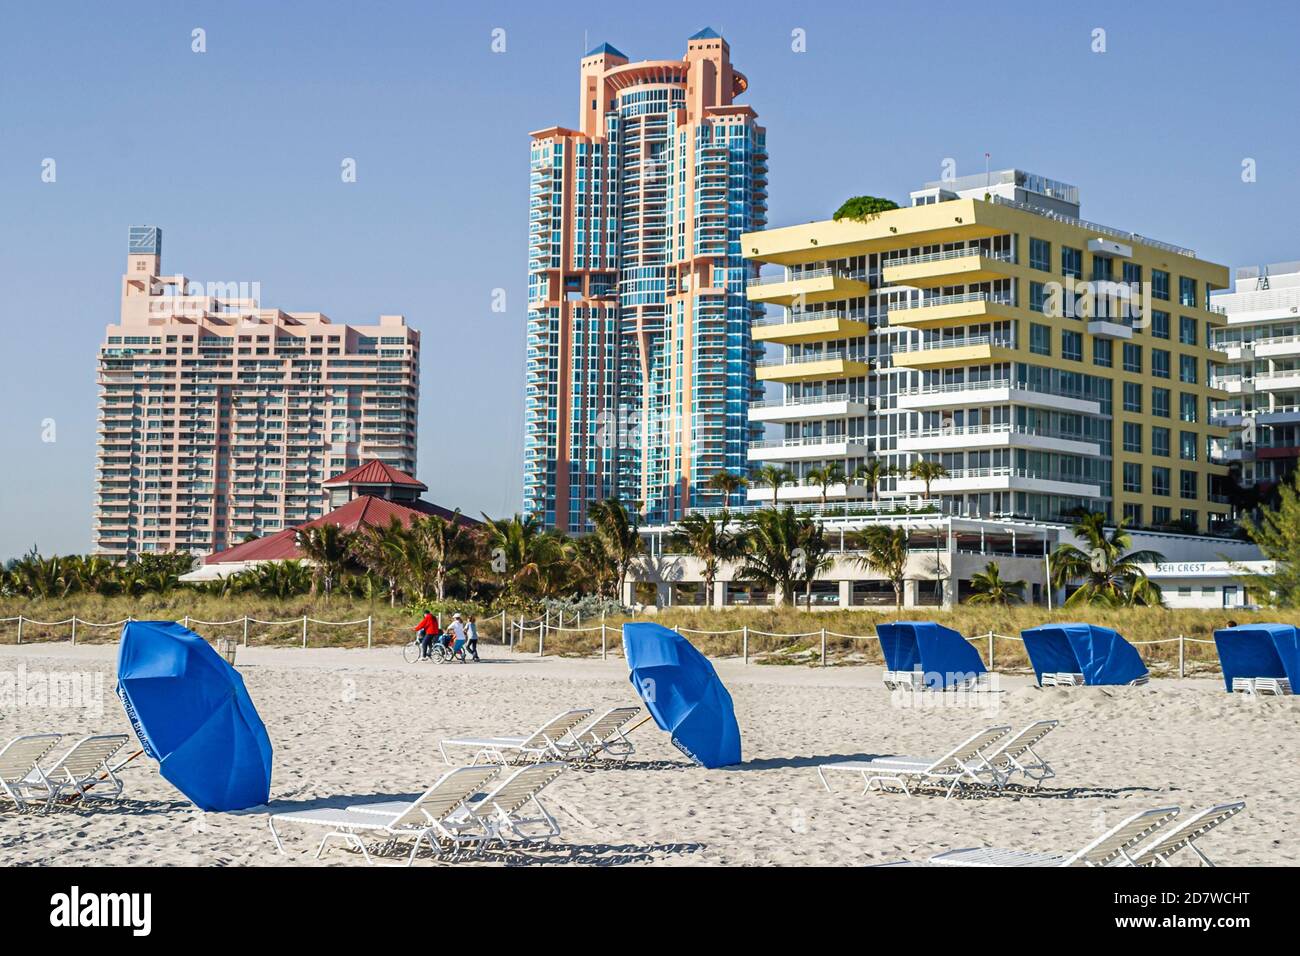 Miami Beach Florida,Atlantic Ocean seashore,rental umbrellas,high rise building buildings condominiums,residences,condominium residential apartment ap Stock Photo